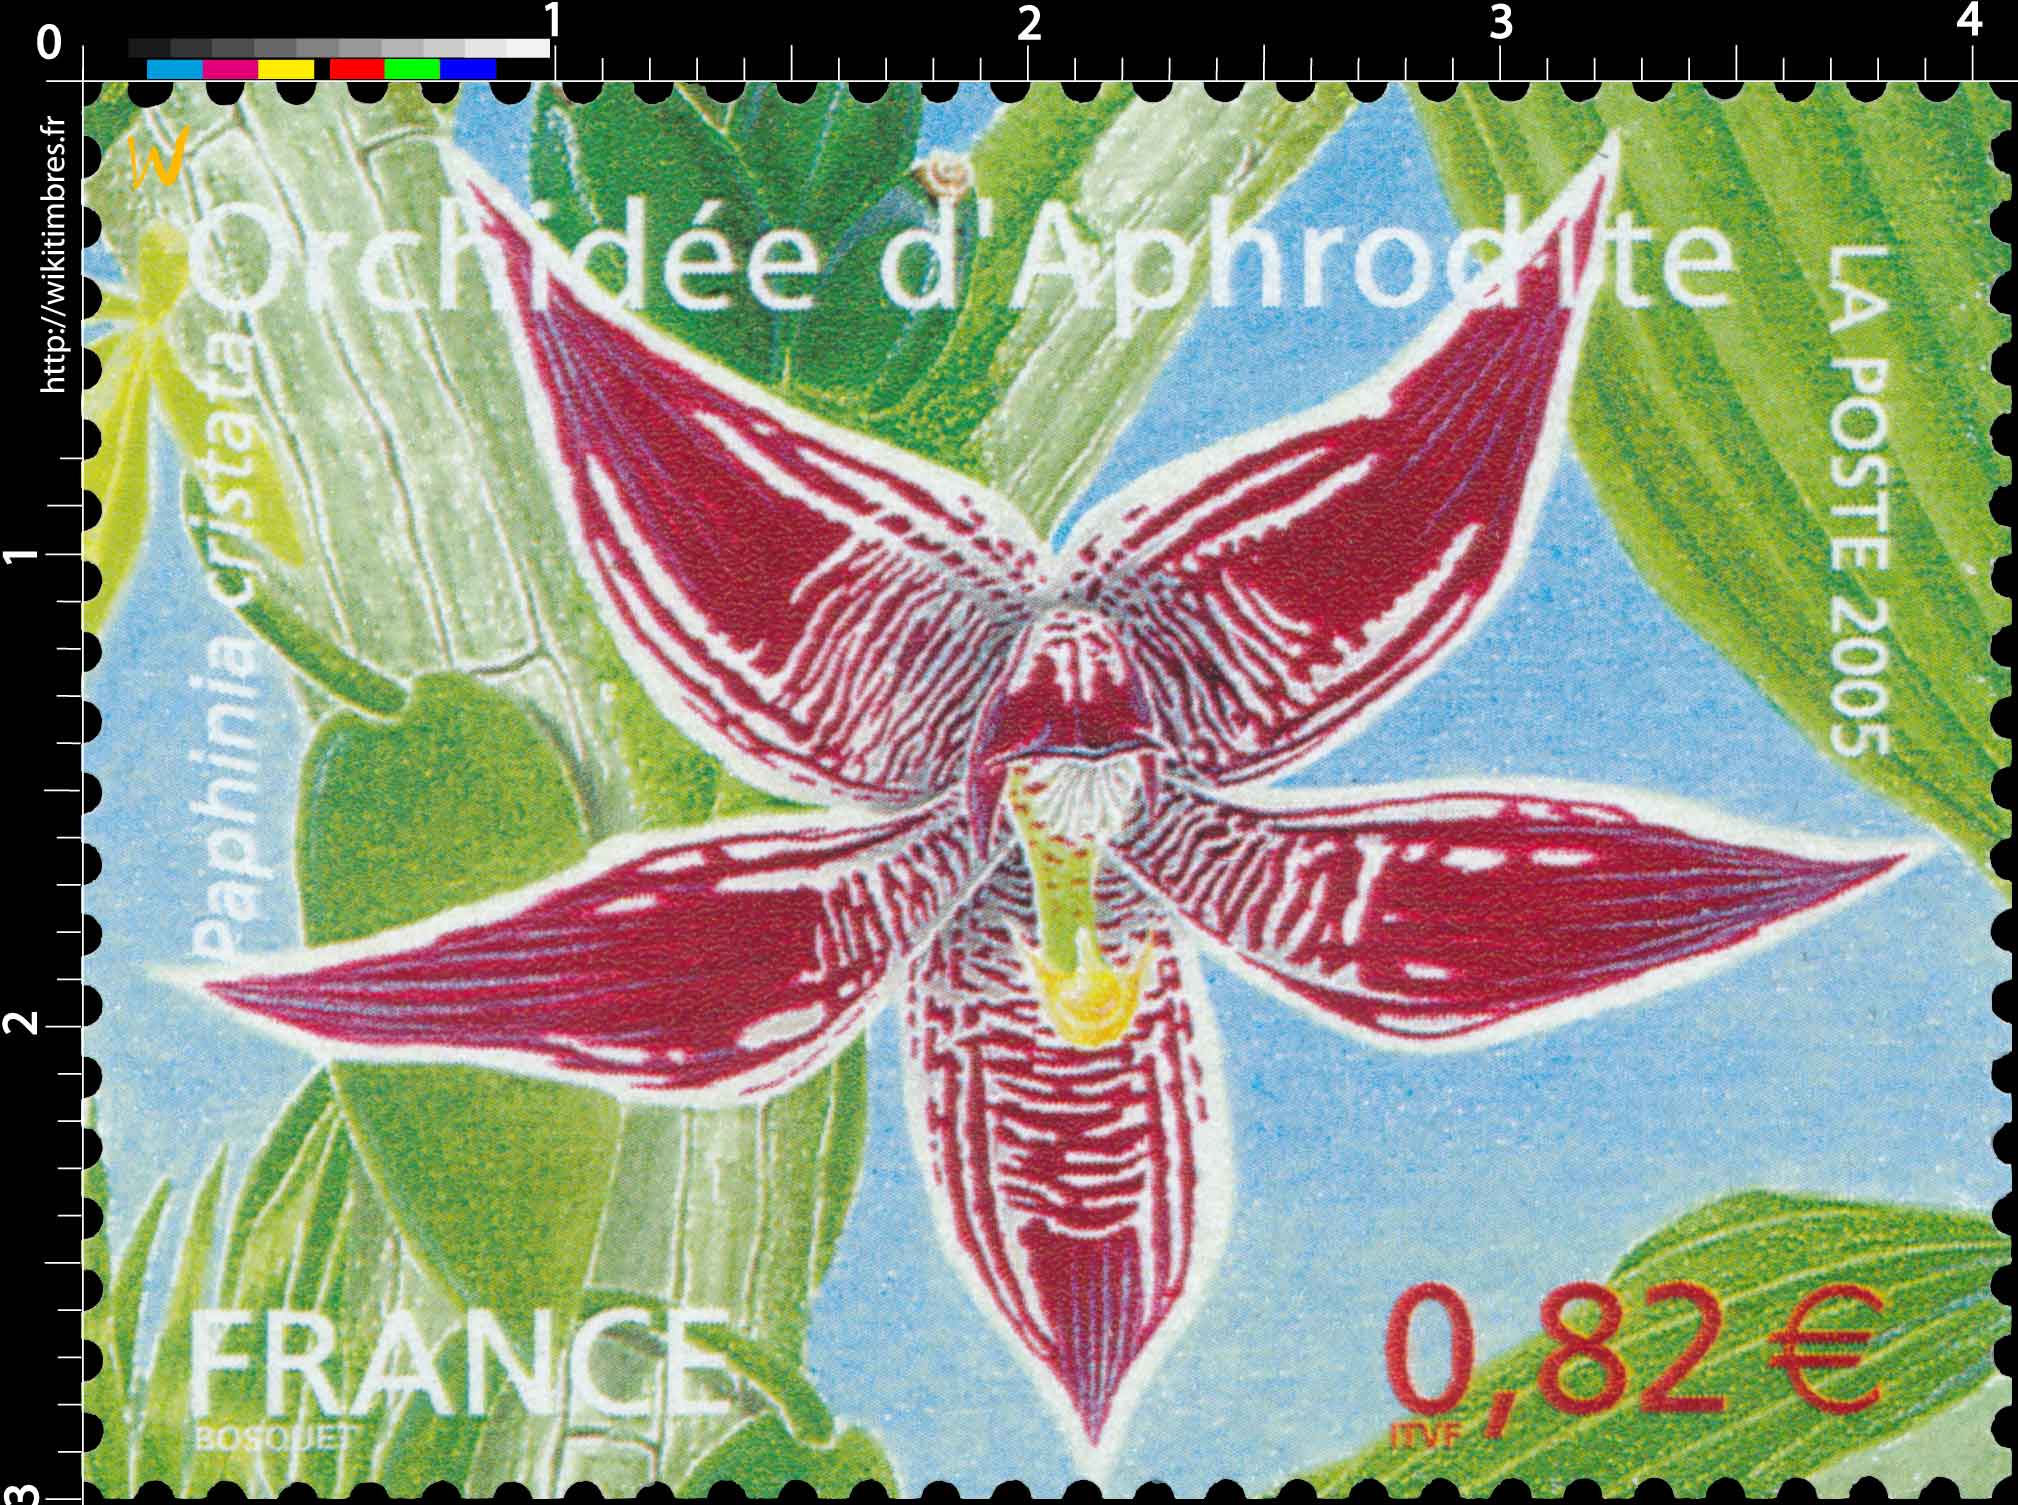 2005 Orchidée d'Aphrodite Paphinia cristata